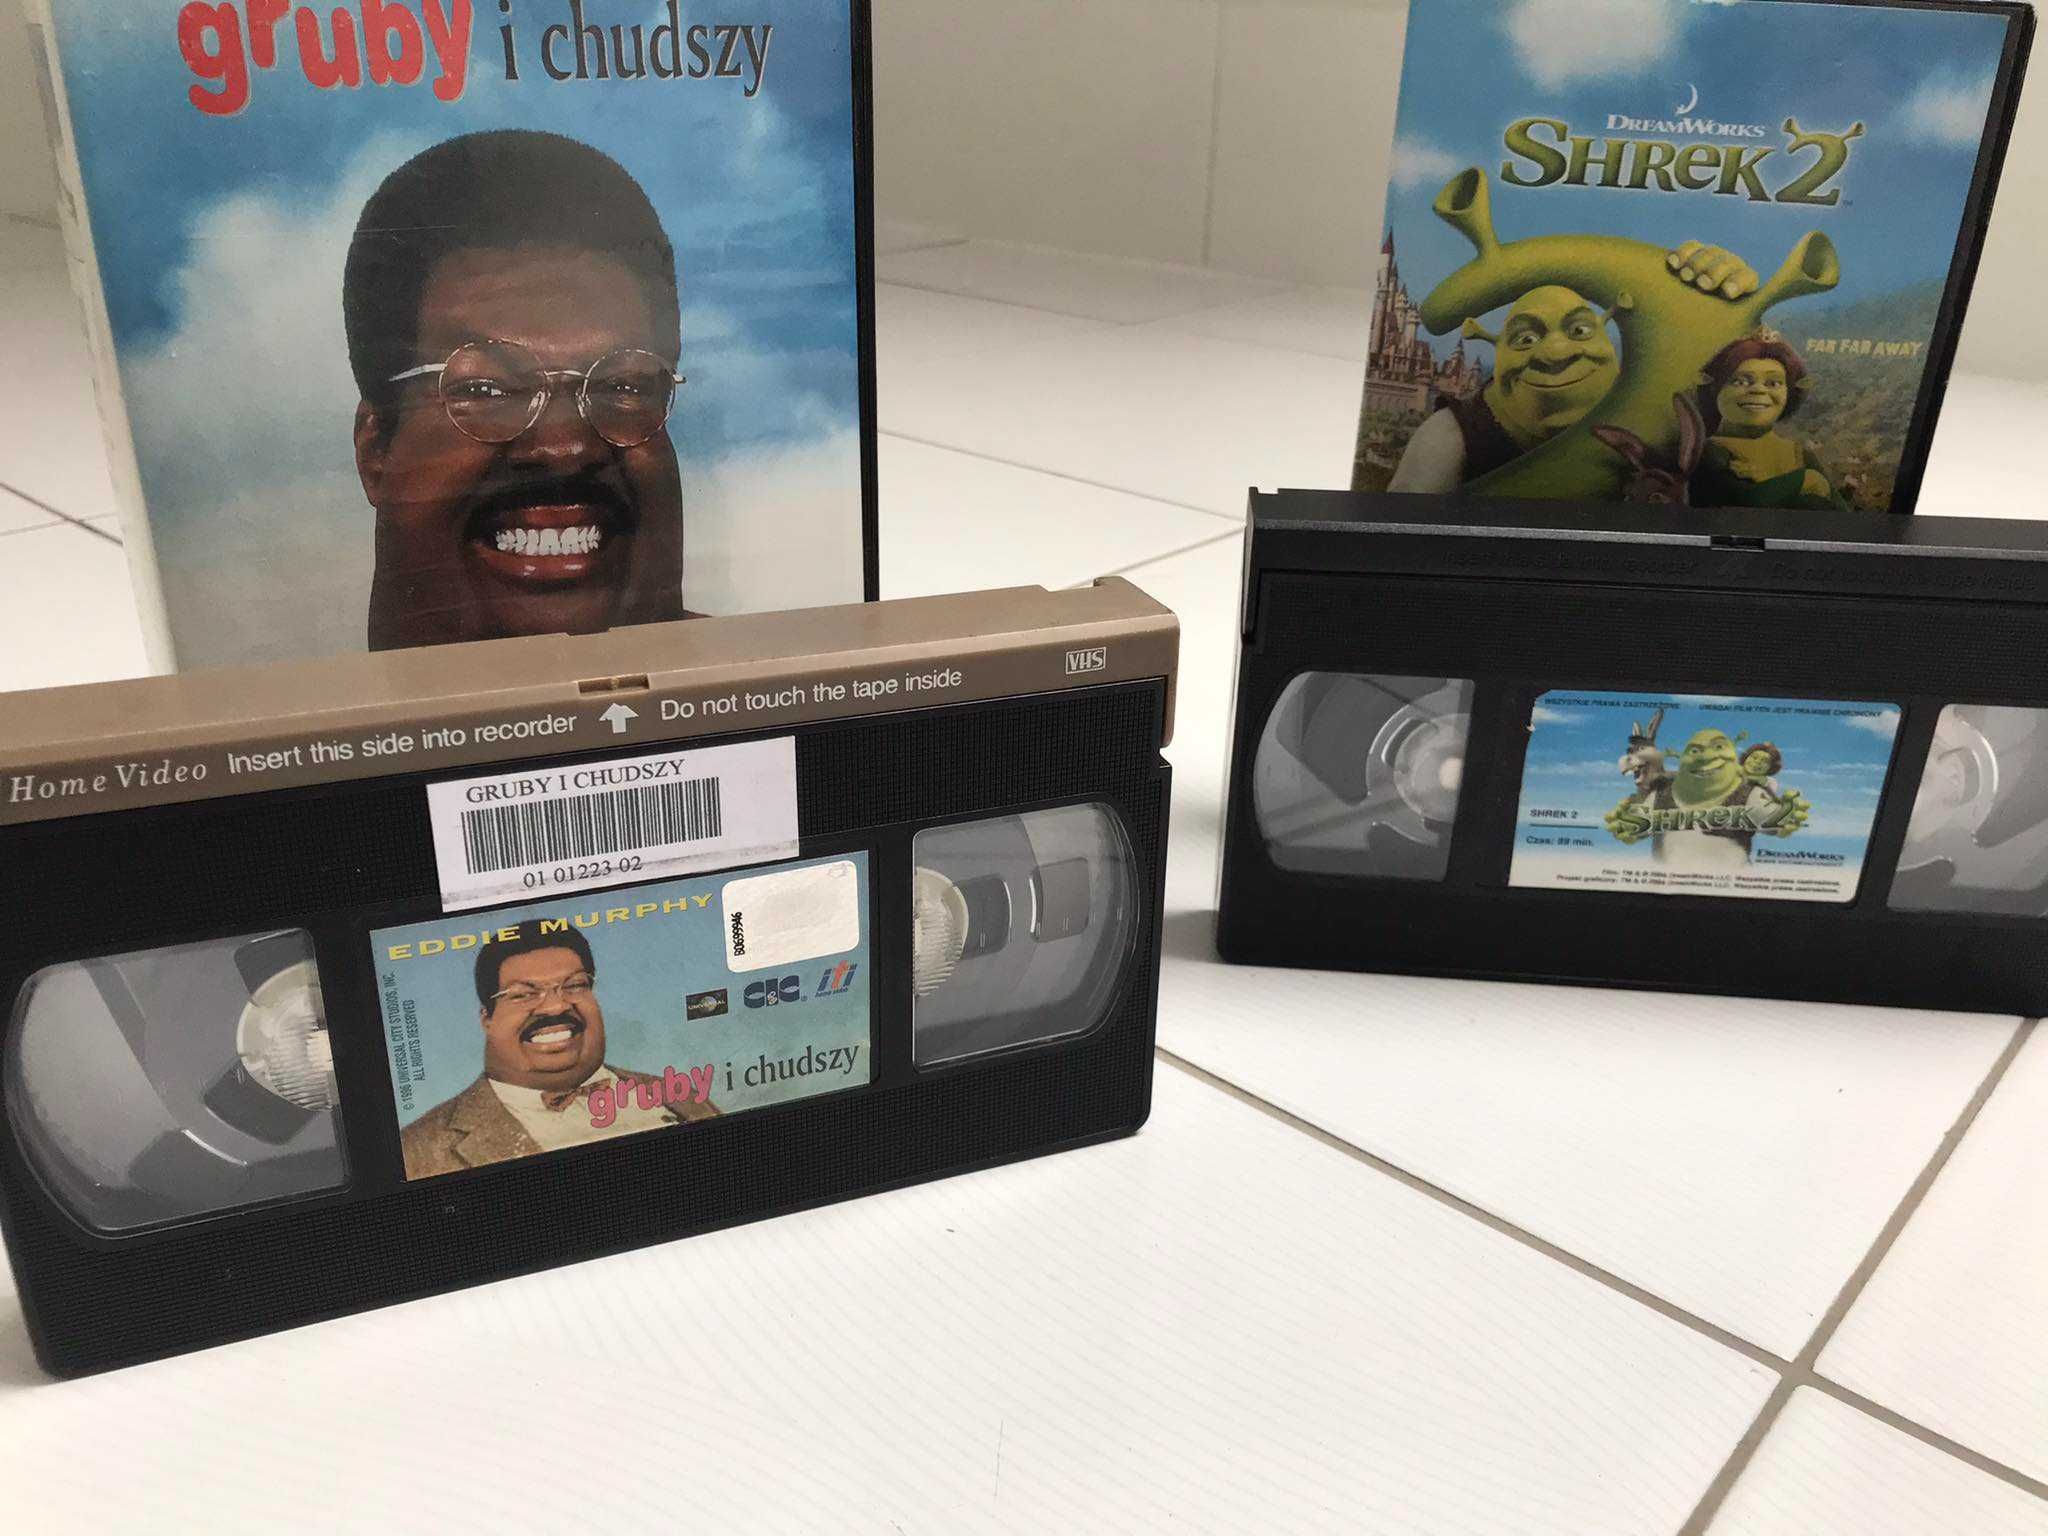 Filmy Gruby i Chudszy oraz Shrek 2 vhs